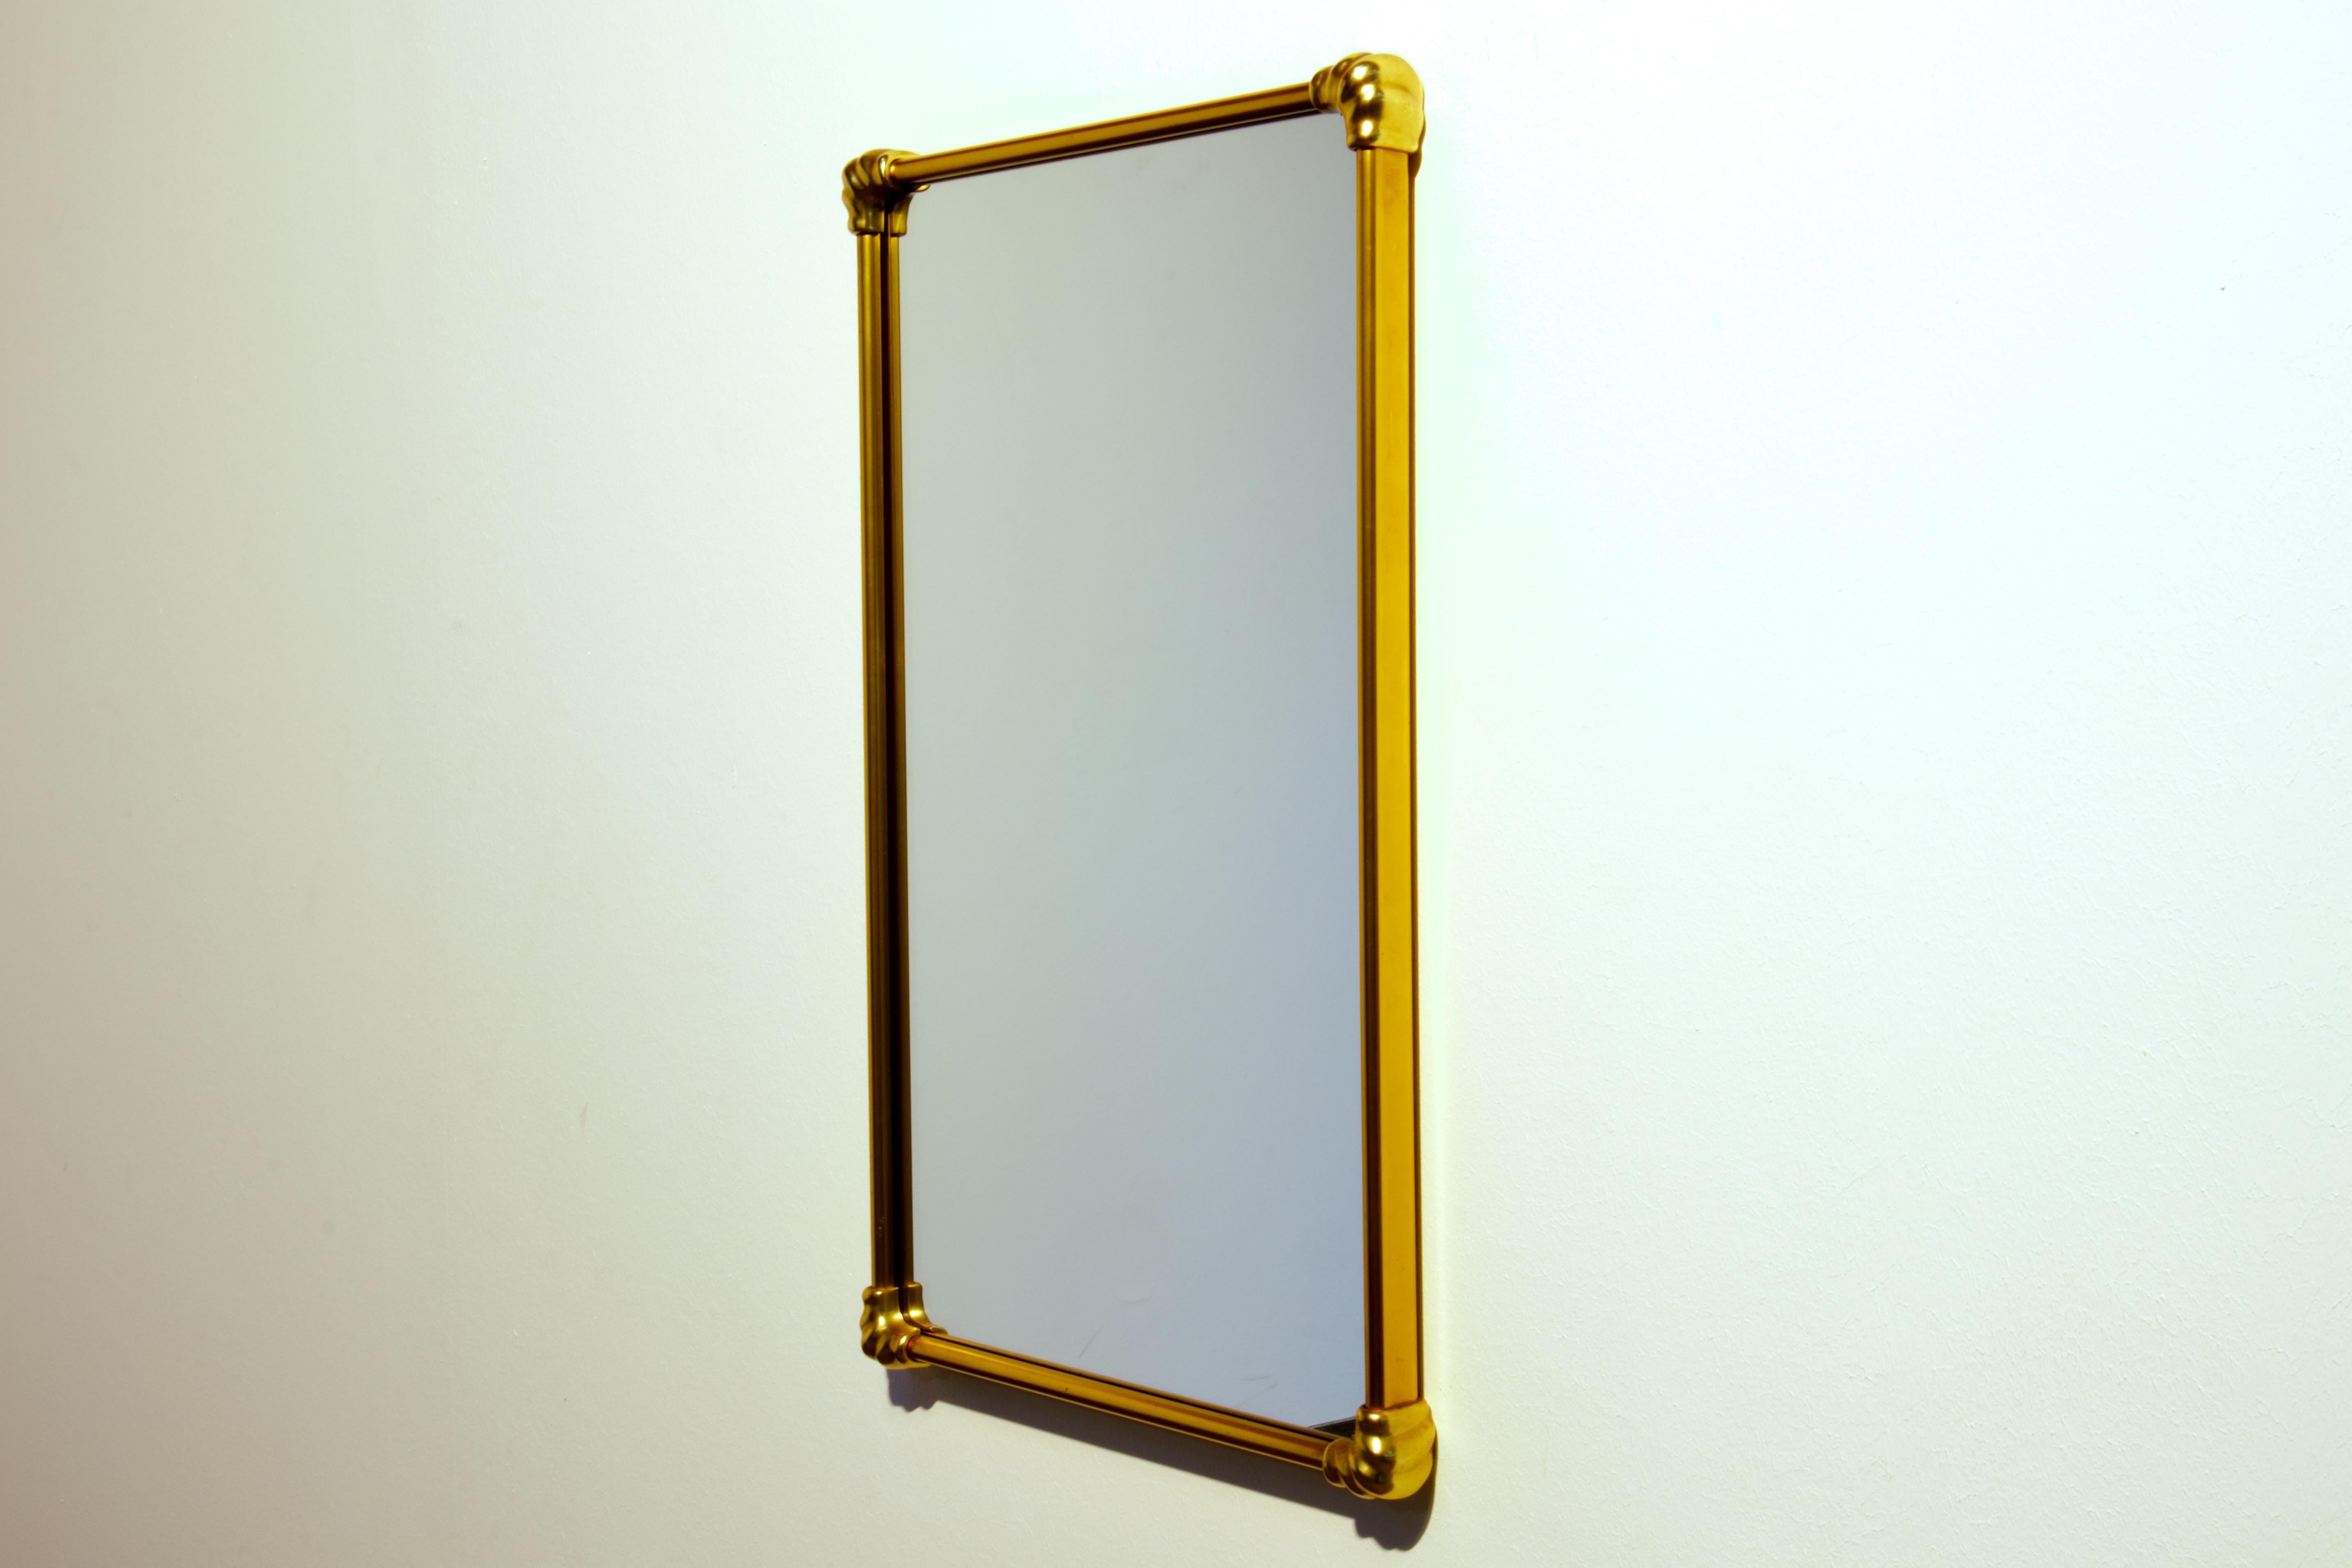 Miroir mural en laiton patiné d'époque Gio Ponti. Fabriqué en Italie dans les années 1950.

La forme du miroir est un rectangle avec des côtés droits en laiton et des éléments d'angle en laiton massif qui ont une forme curviligne élégante.

La